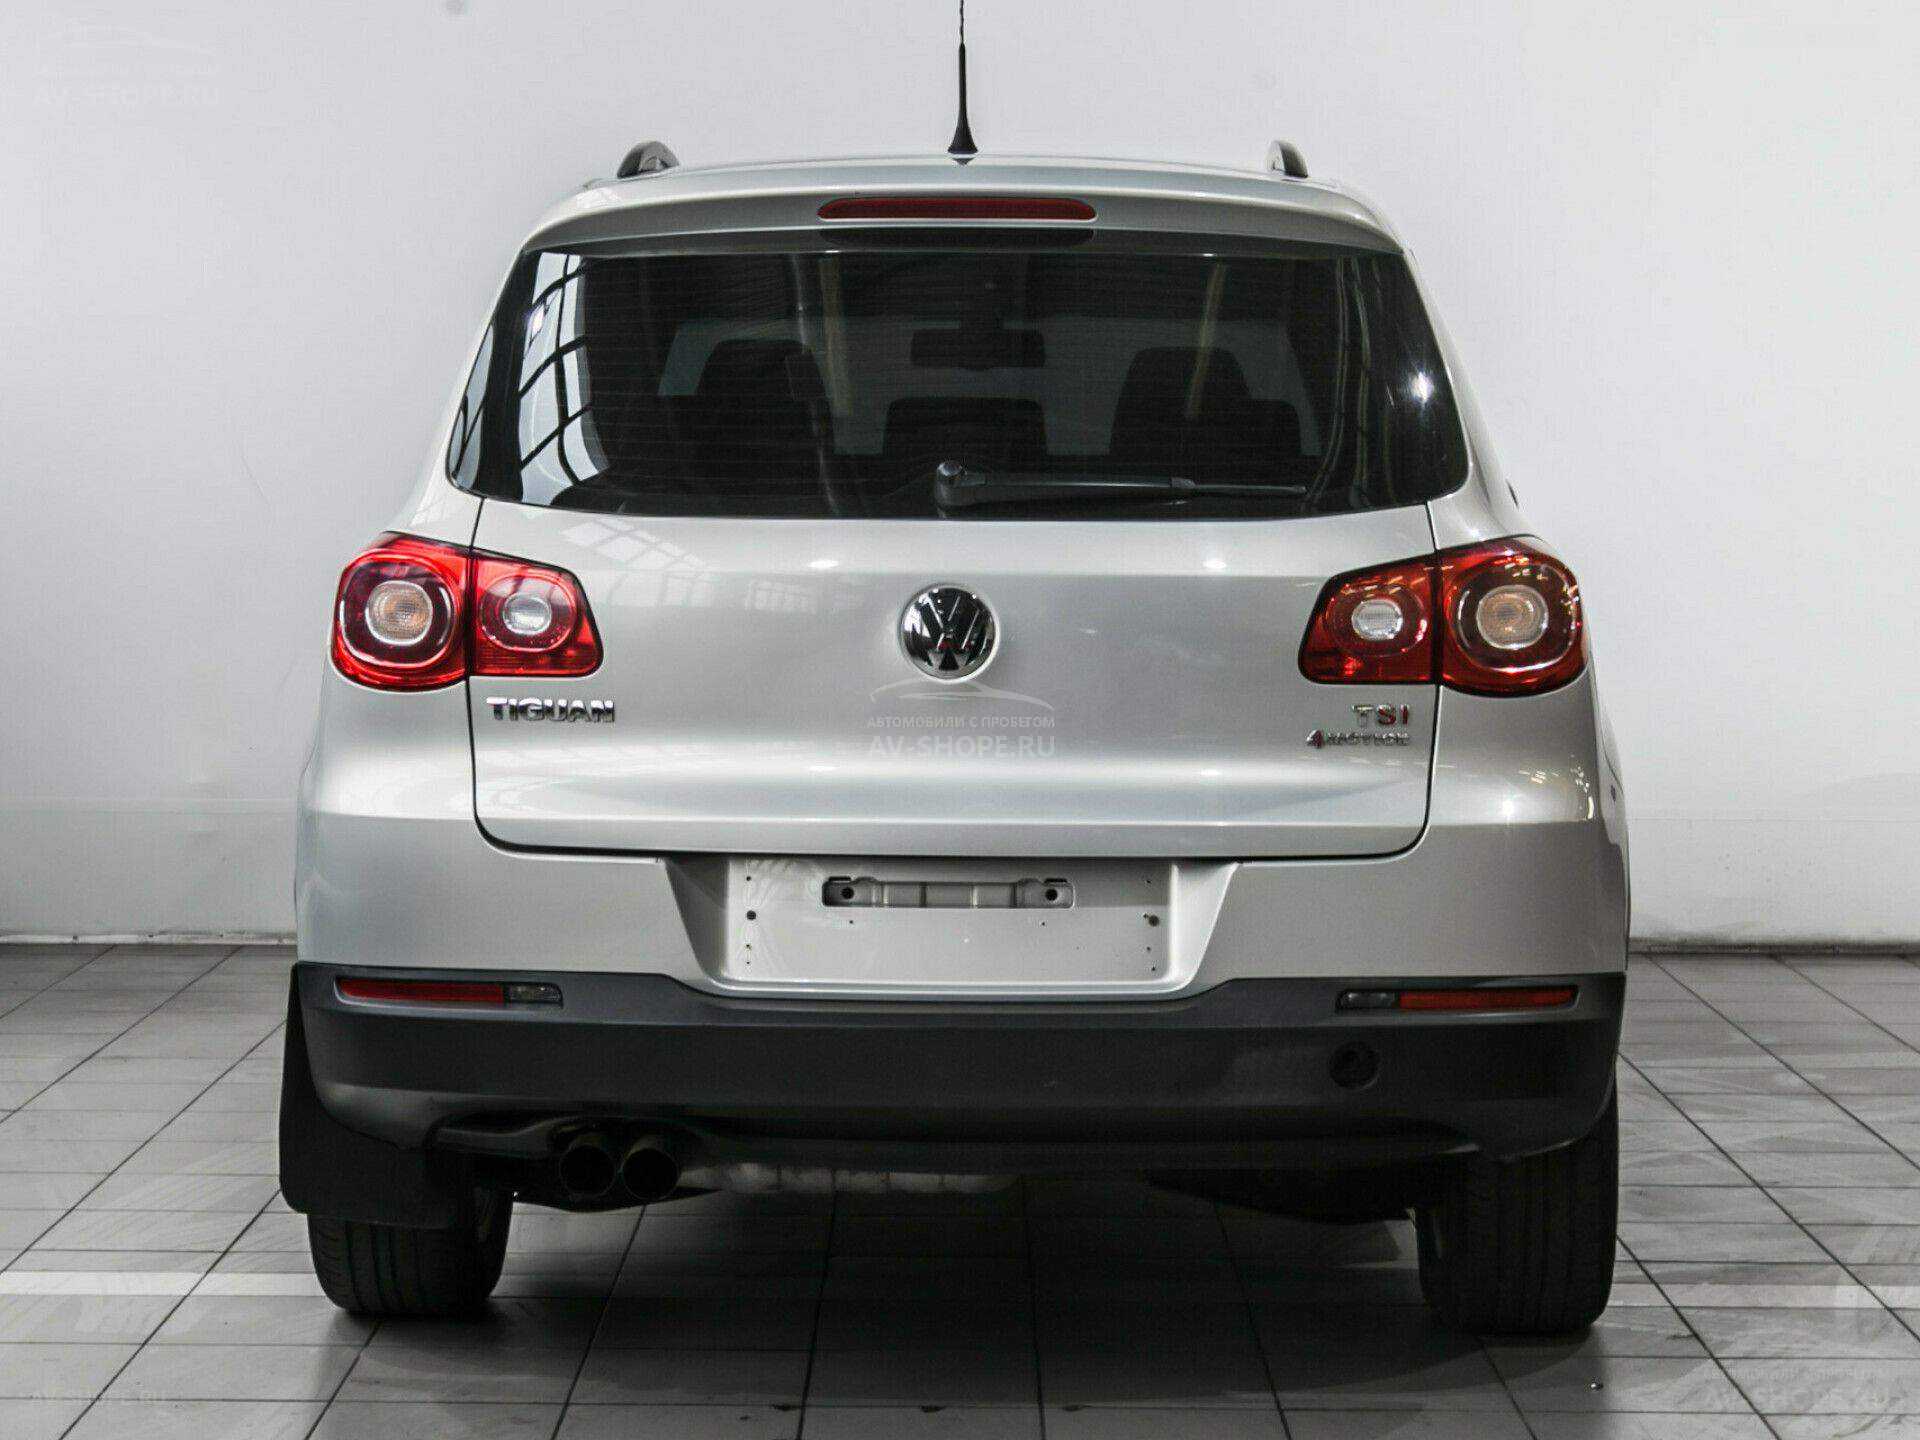 Volkswagen tiguan 2009